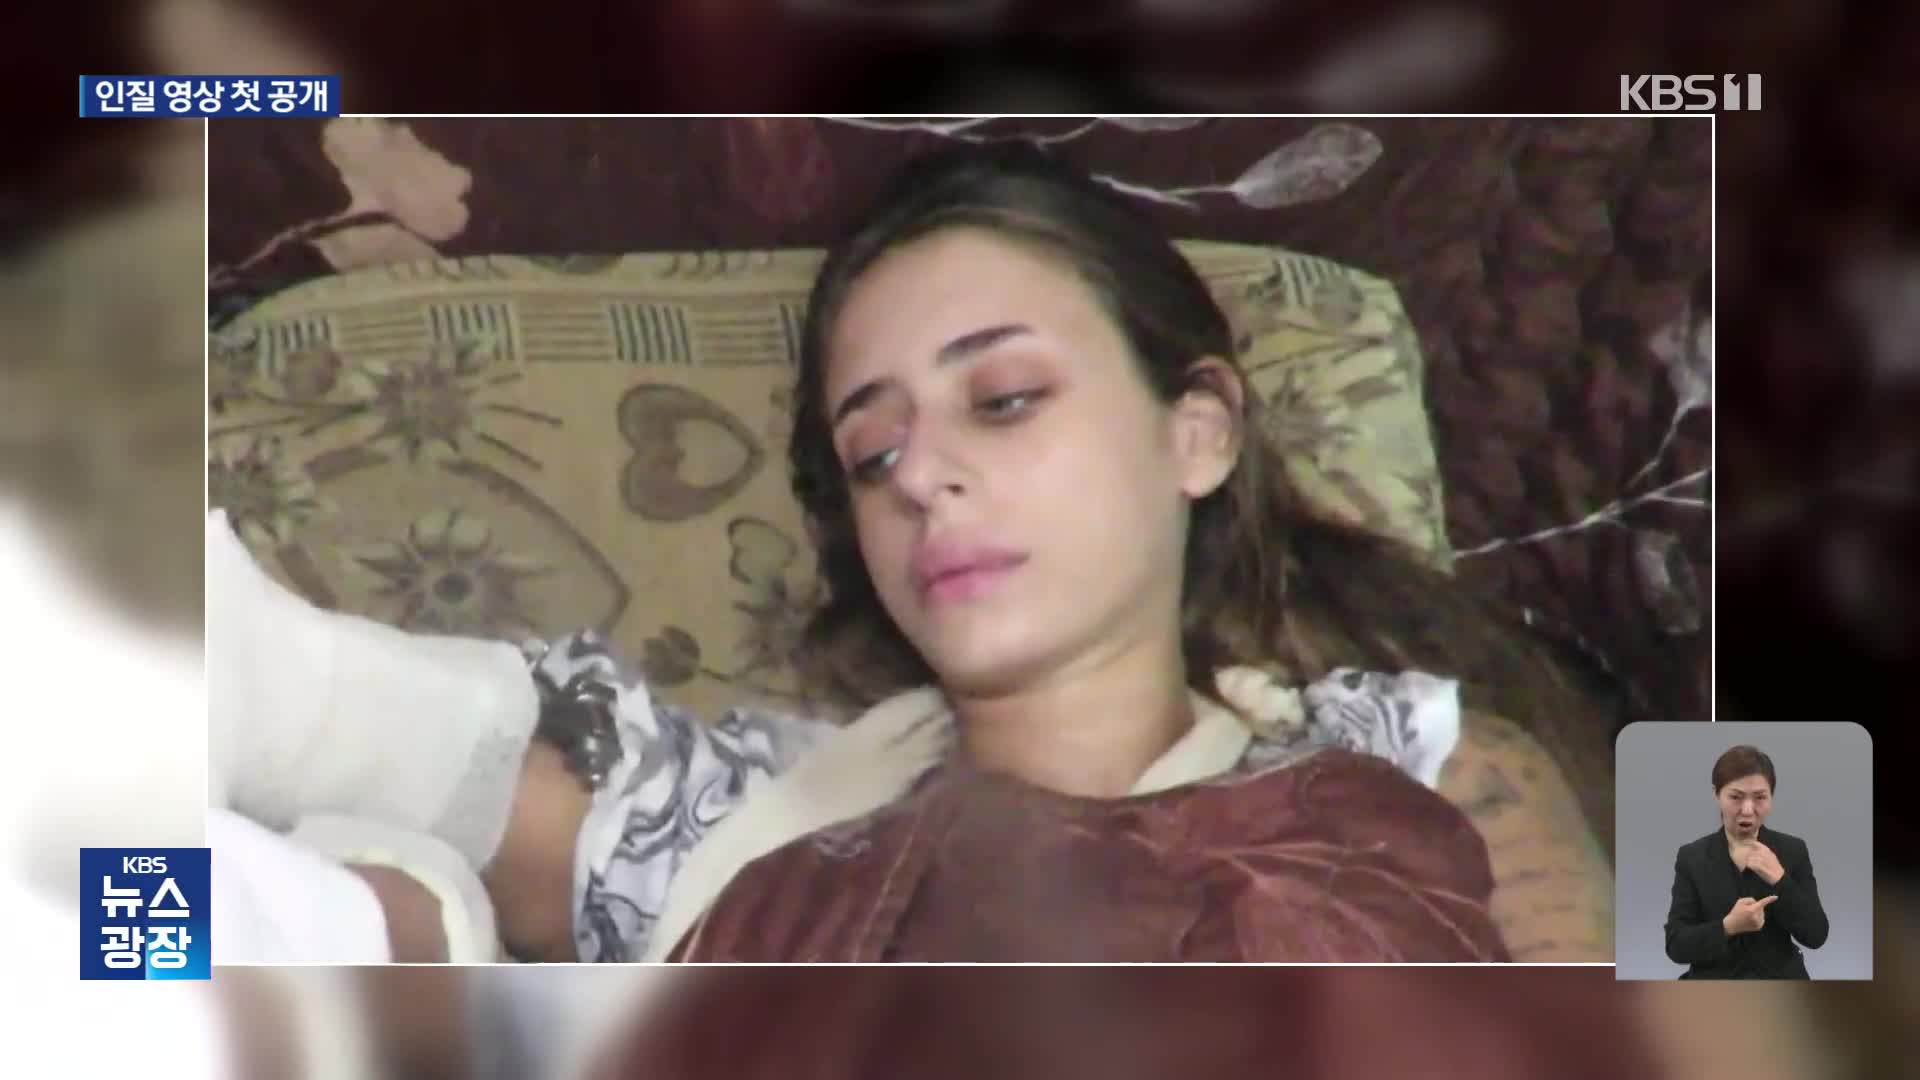 하마스, 20대 여성 인질 영상 공개…수감자 6천 명 맞교환 요구